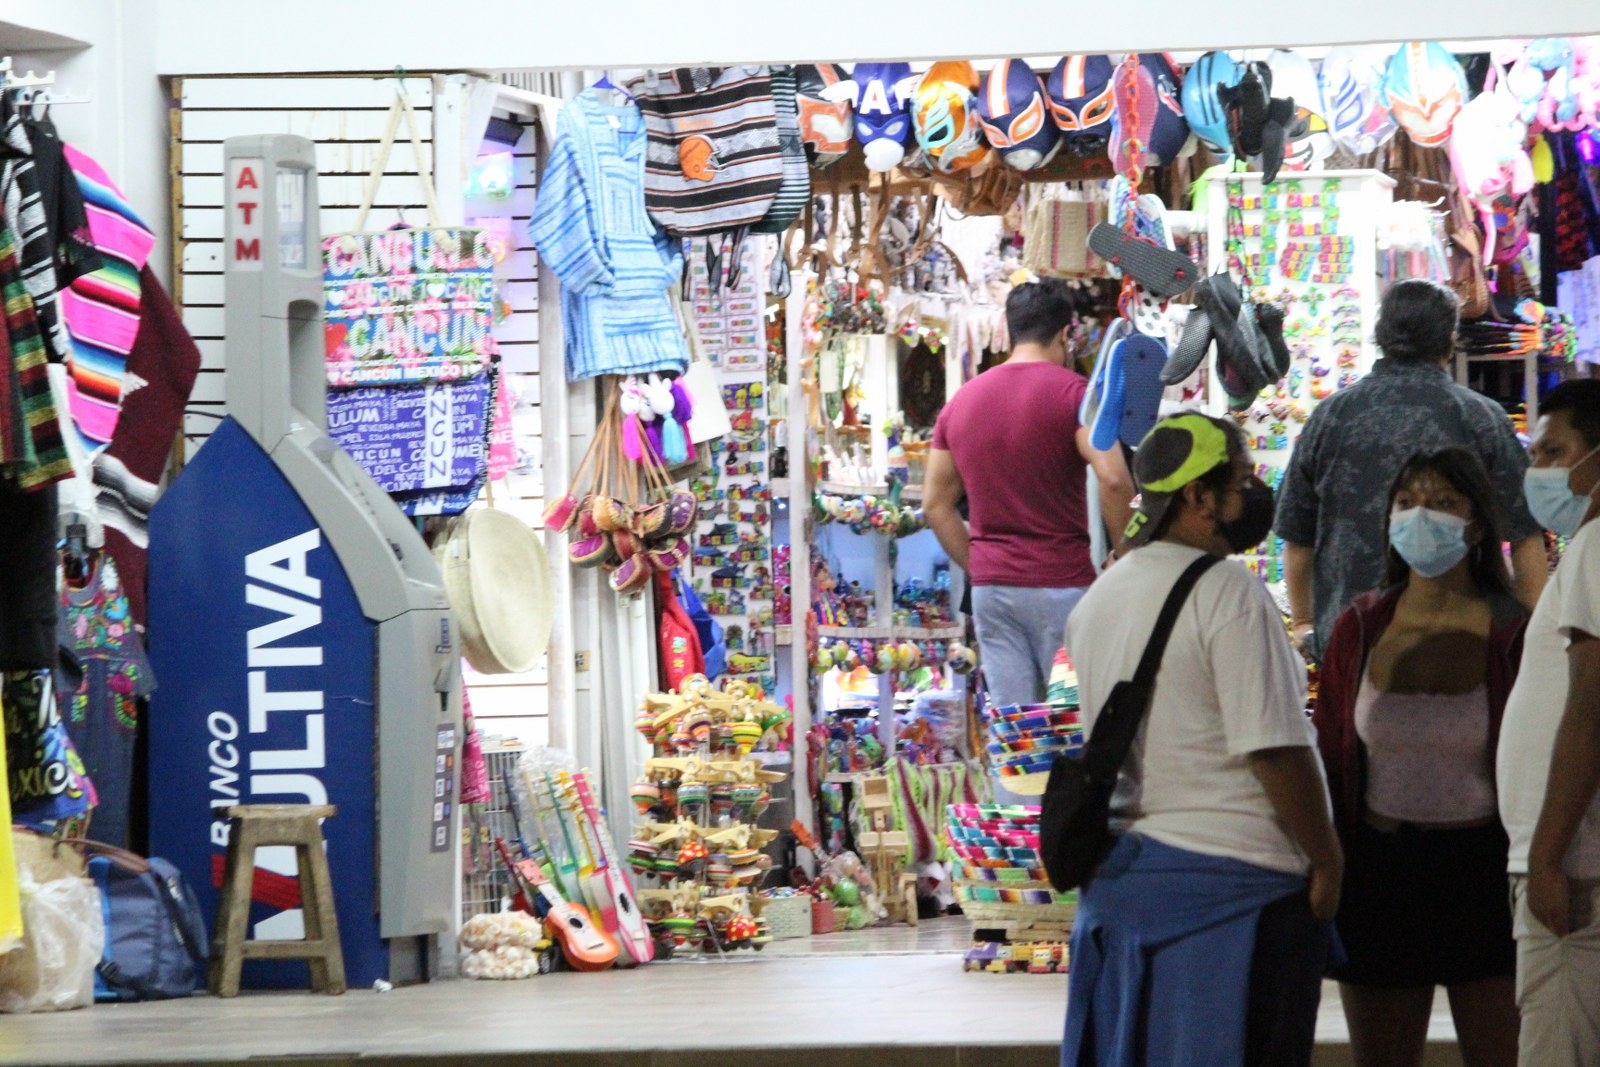 Los comerciantes indicaron que, pese a la eliminación del cubrebocas en espacios abiertos en Quintana Roo, mantendrán la medida en sus establecimientos